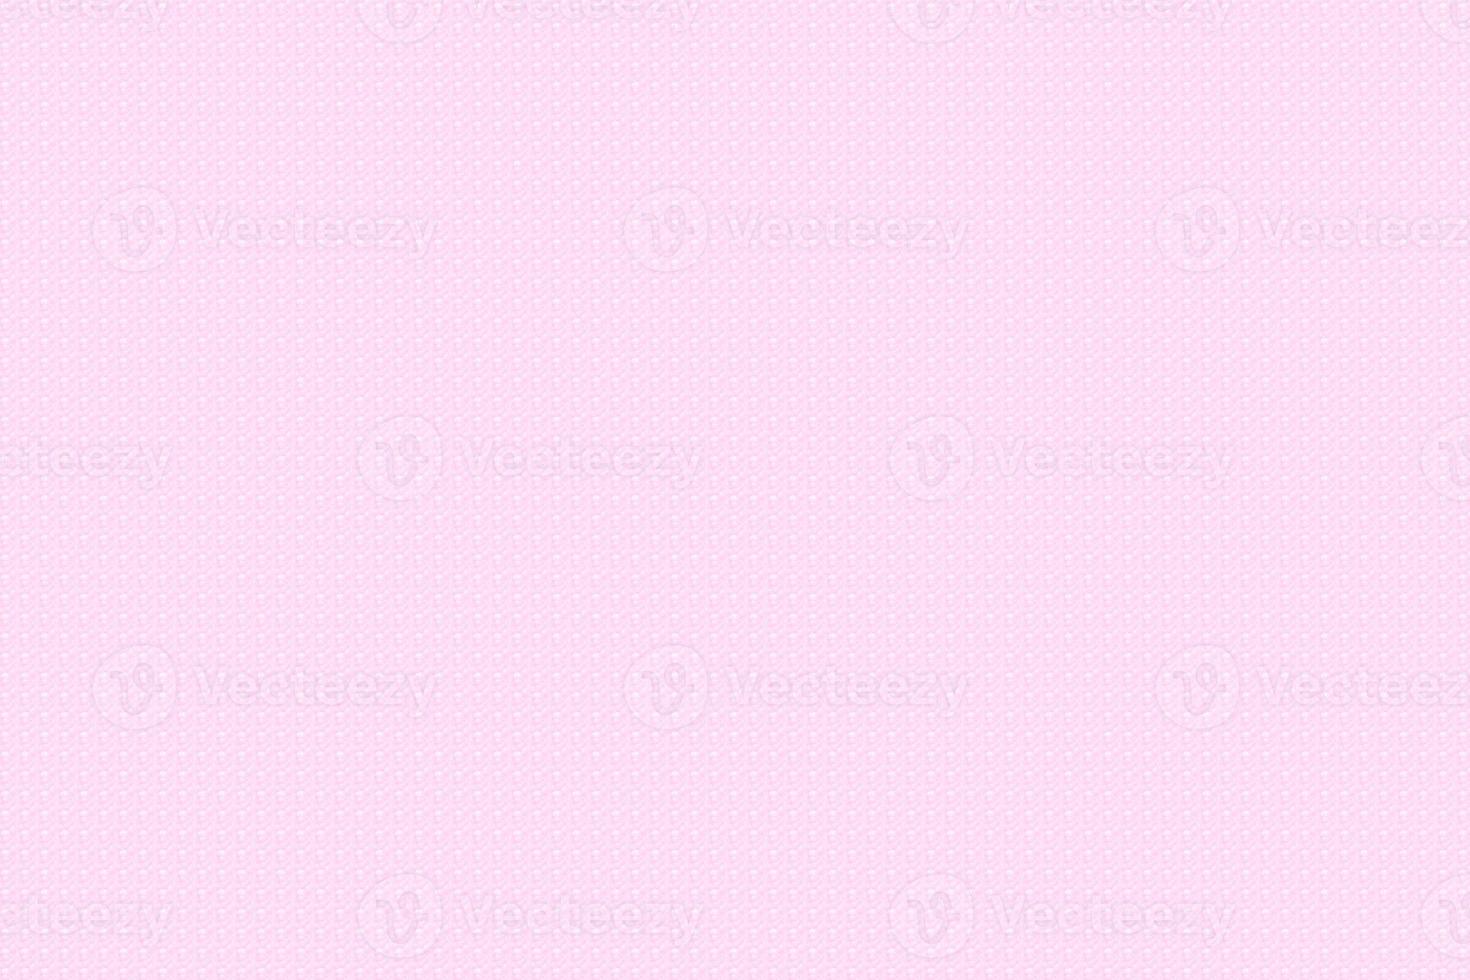 Free download Light Pink Color Background Wallpaper x Light Pink Solid  Color 1920x1080 for your Desktop Mobile  Tablet  Explore 48 Light  Pink Wallpaper  Light Pink Wallpapers Light Pink Flower